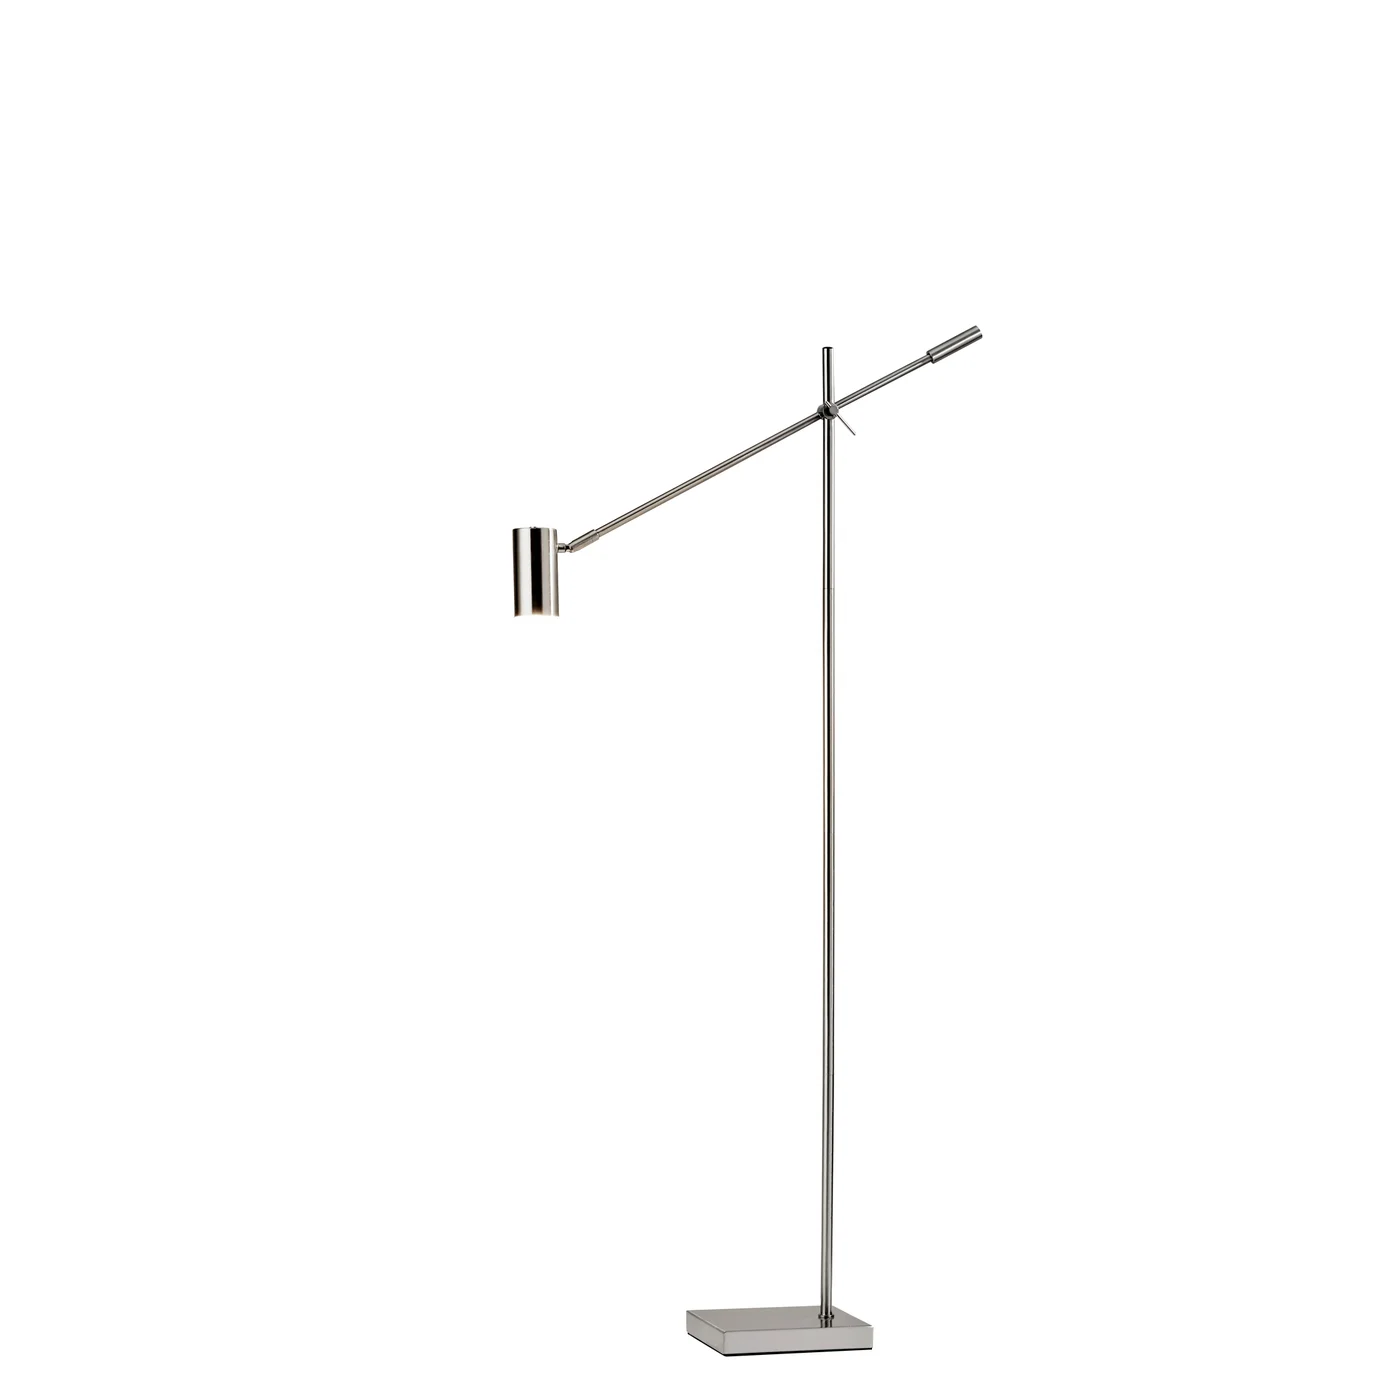 63" Black Adjustable LED Task Floor Lamp With Antiqued Brass Cylinder Shade